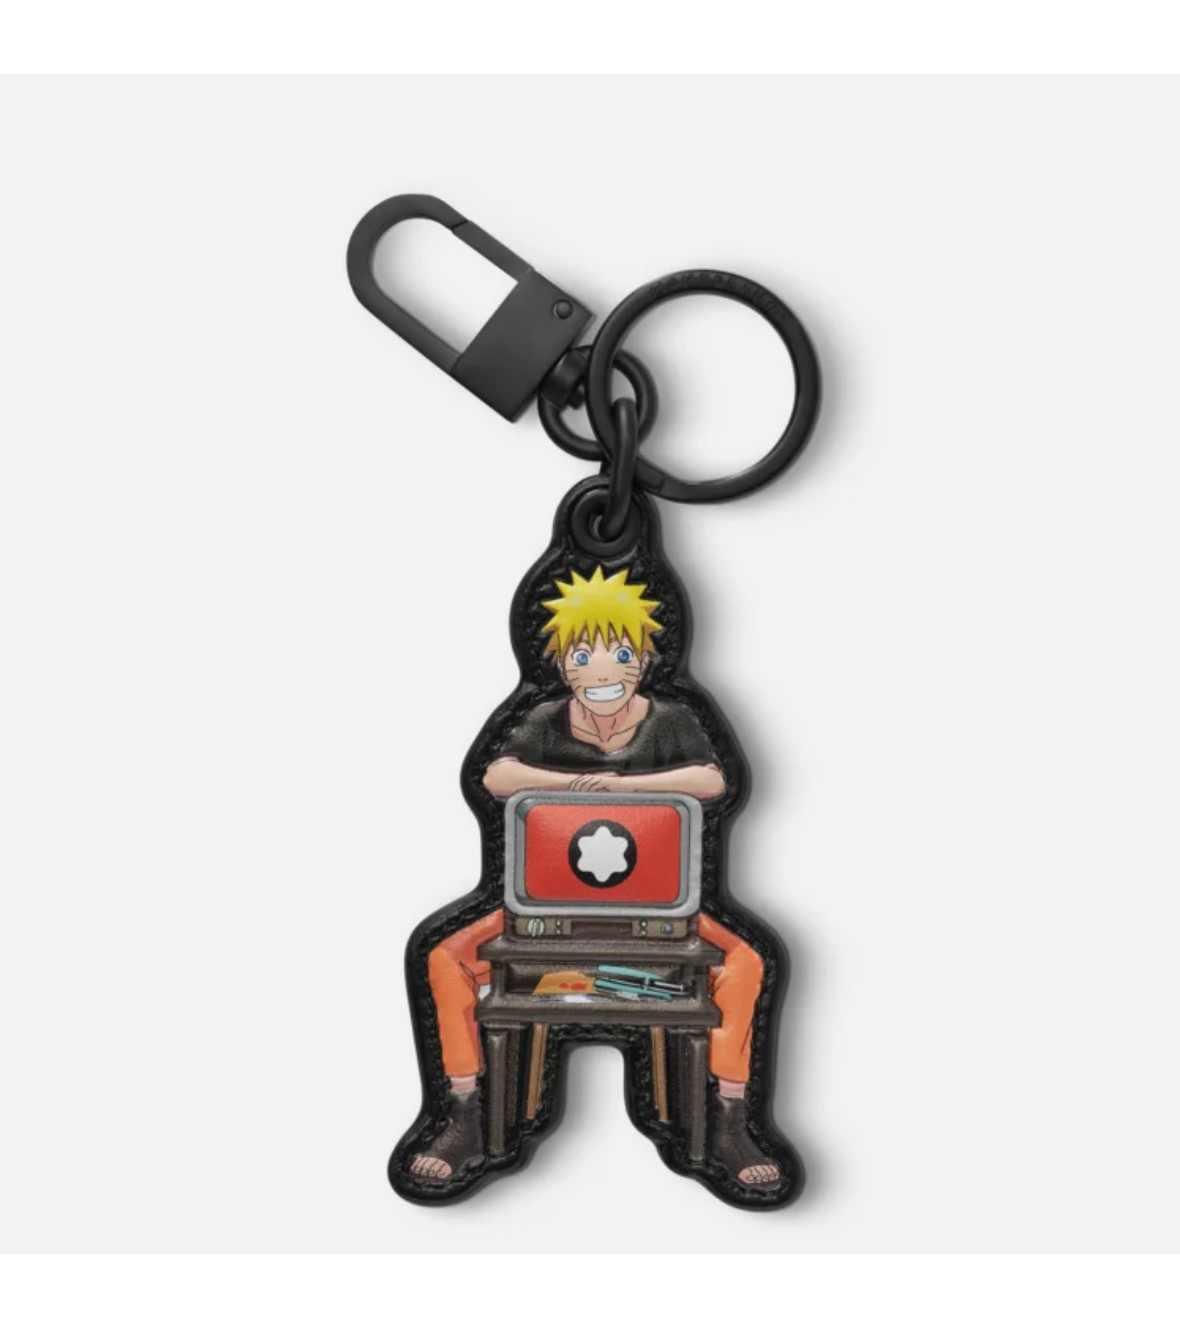 Montblanc x Naruto key fob 130051